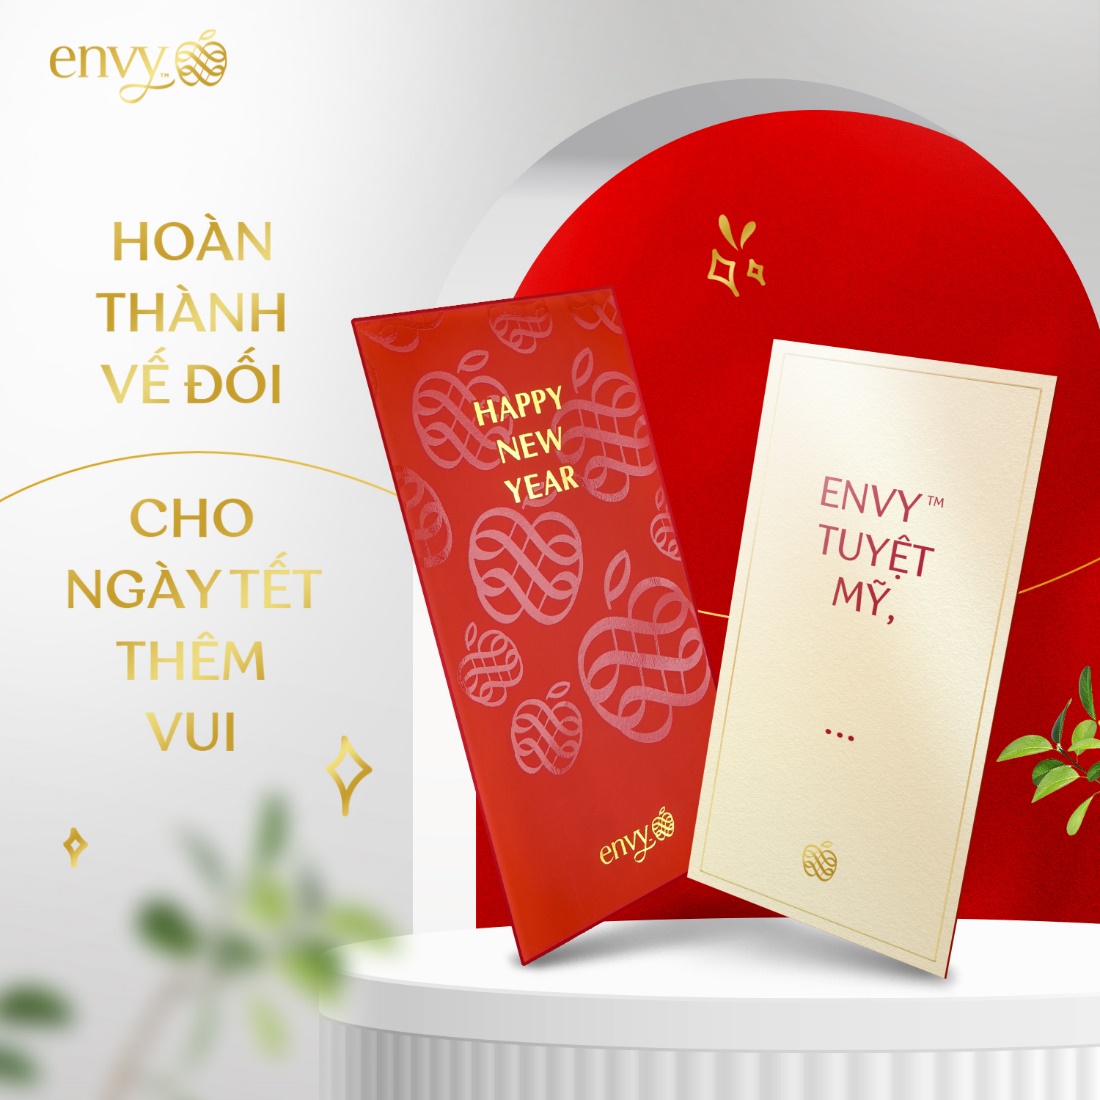 Thử thách “Câu đối ngày tết” trên fanpage của Envy Apples Vietnam